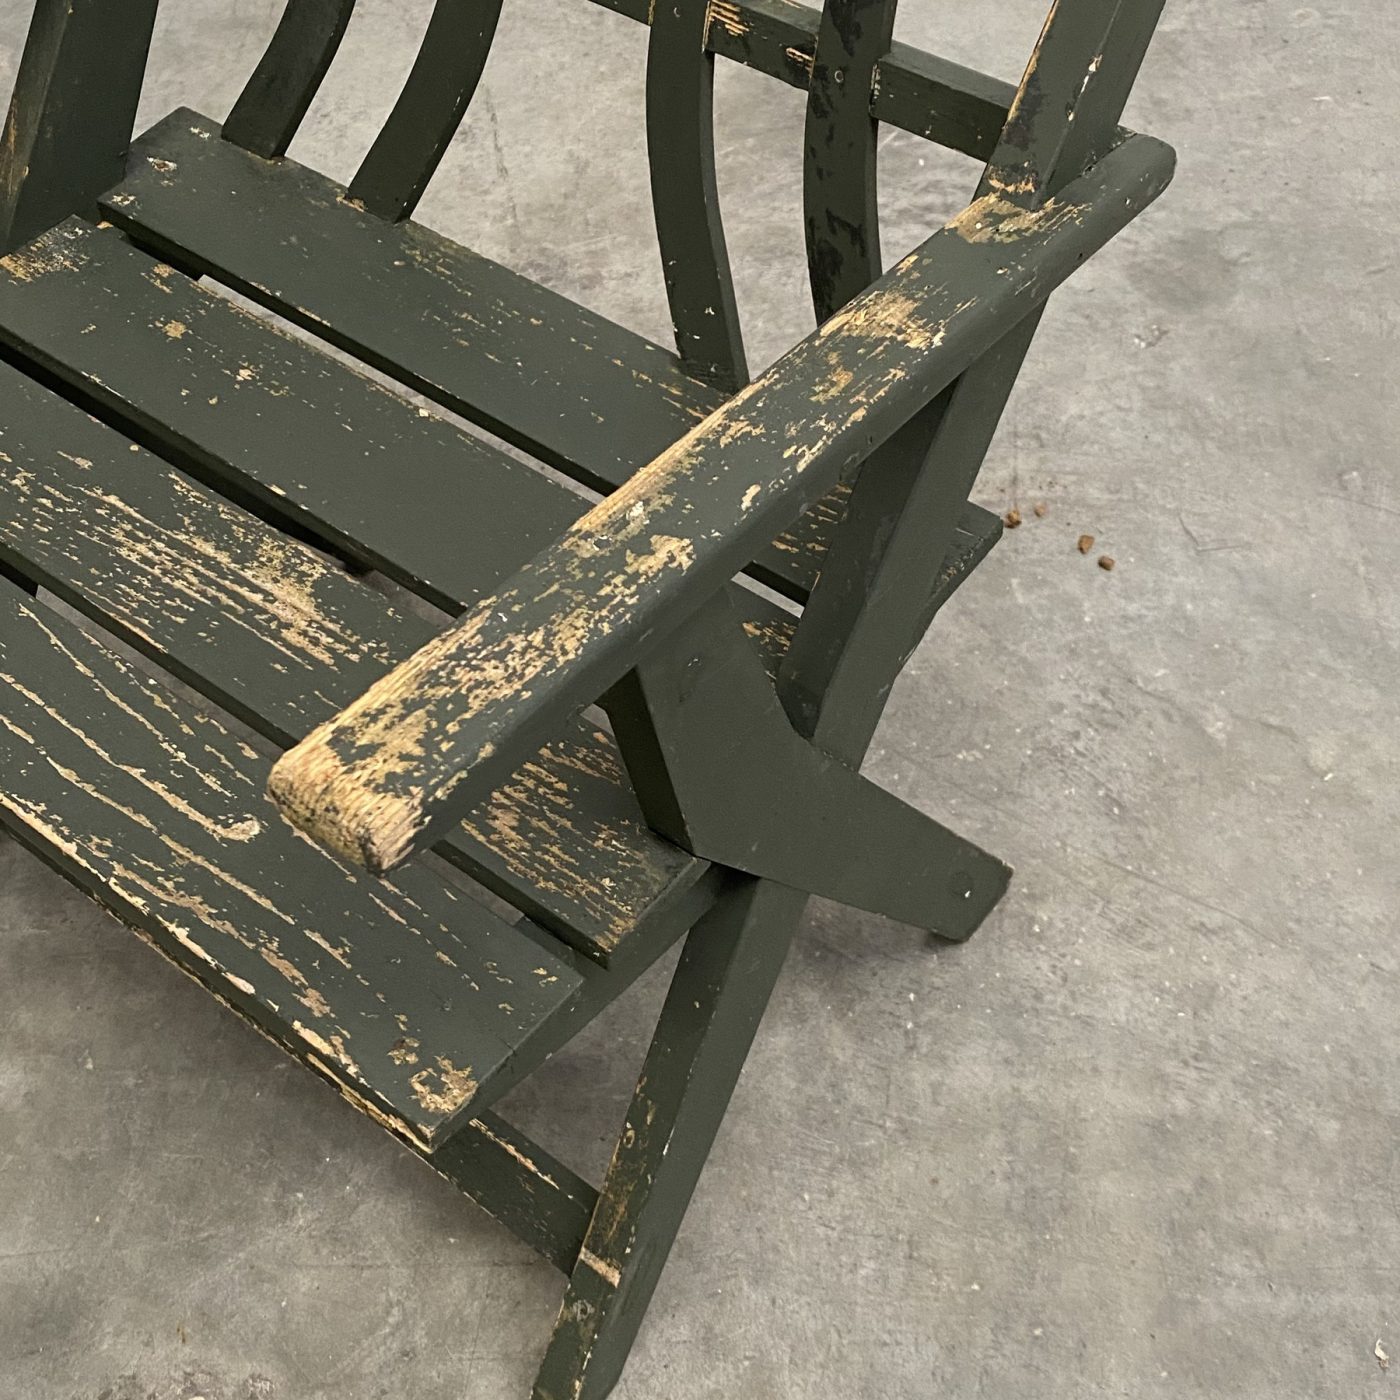 objet-vagabond-wooden-chairs0004